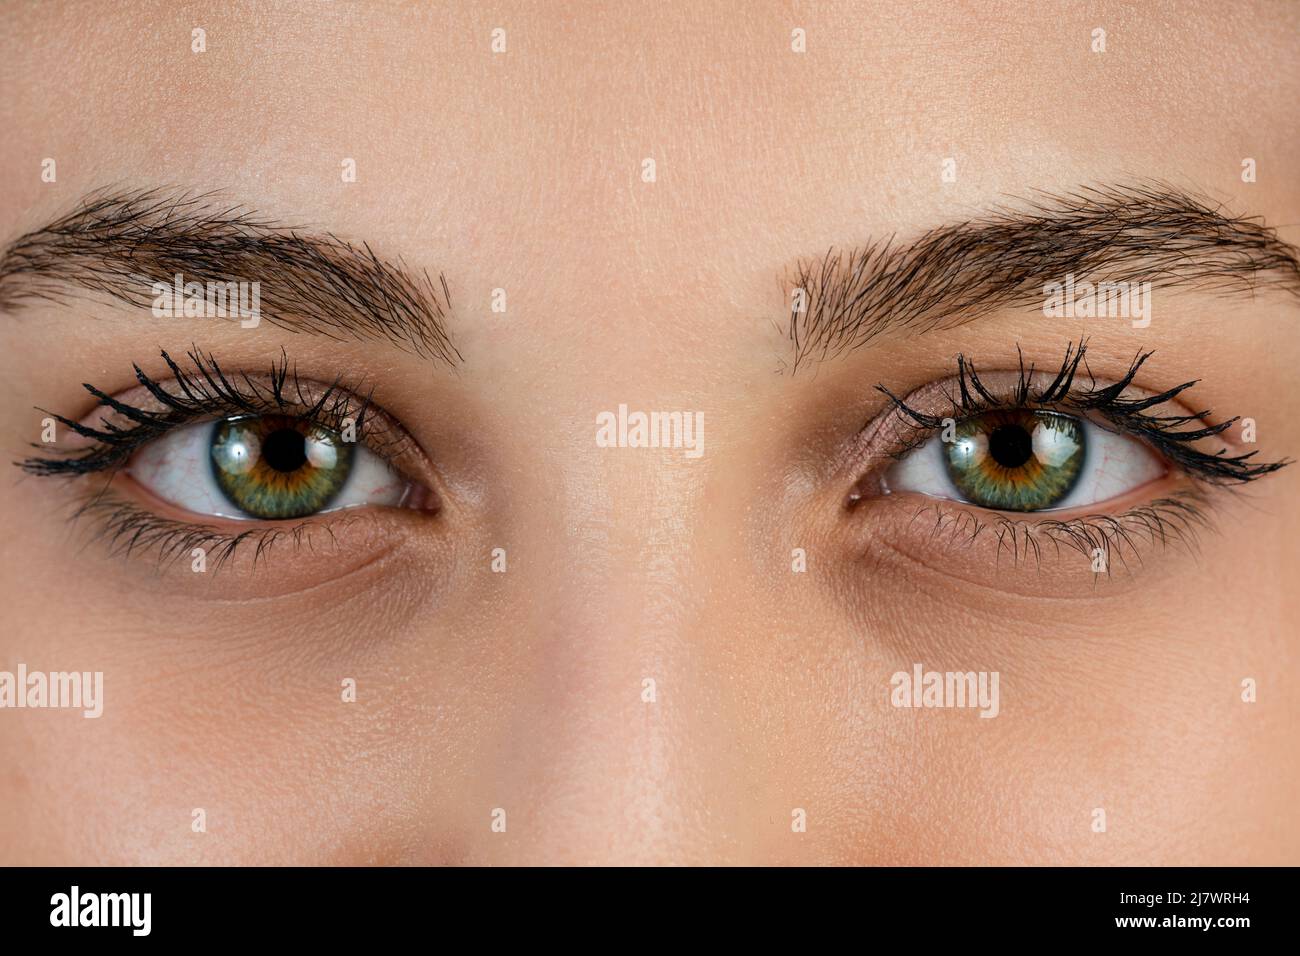 Nahaufnahme, Makroaufnahme eines weiblichen Farbauges, einer Iris, einer Pupille, Wimpern, Augenlidern. Hochwertige Fotos Stockfoto